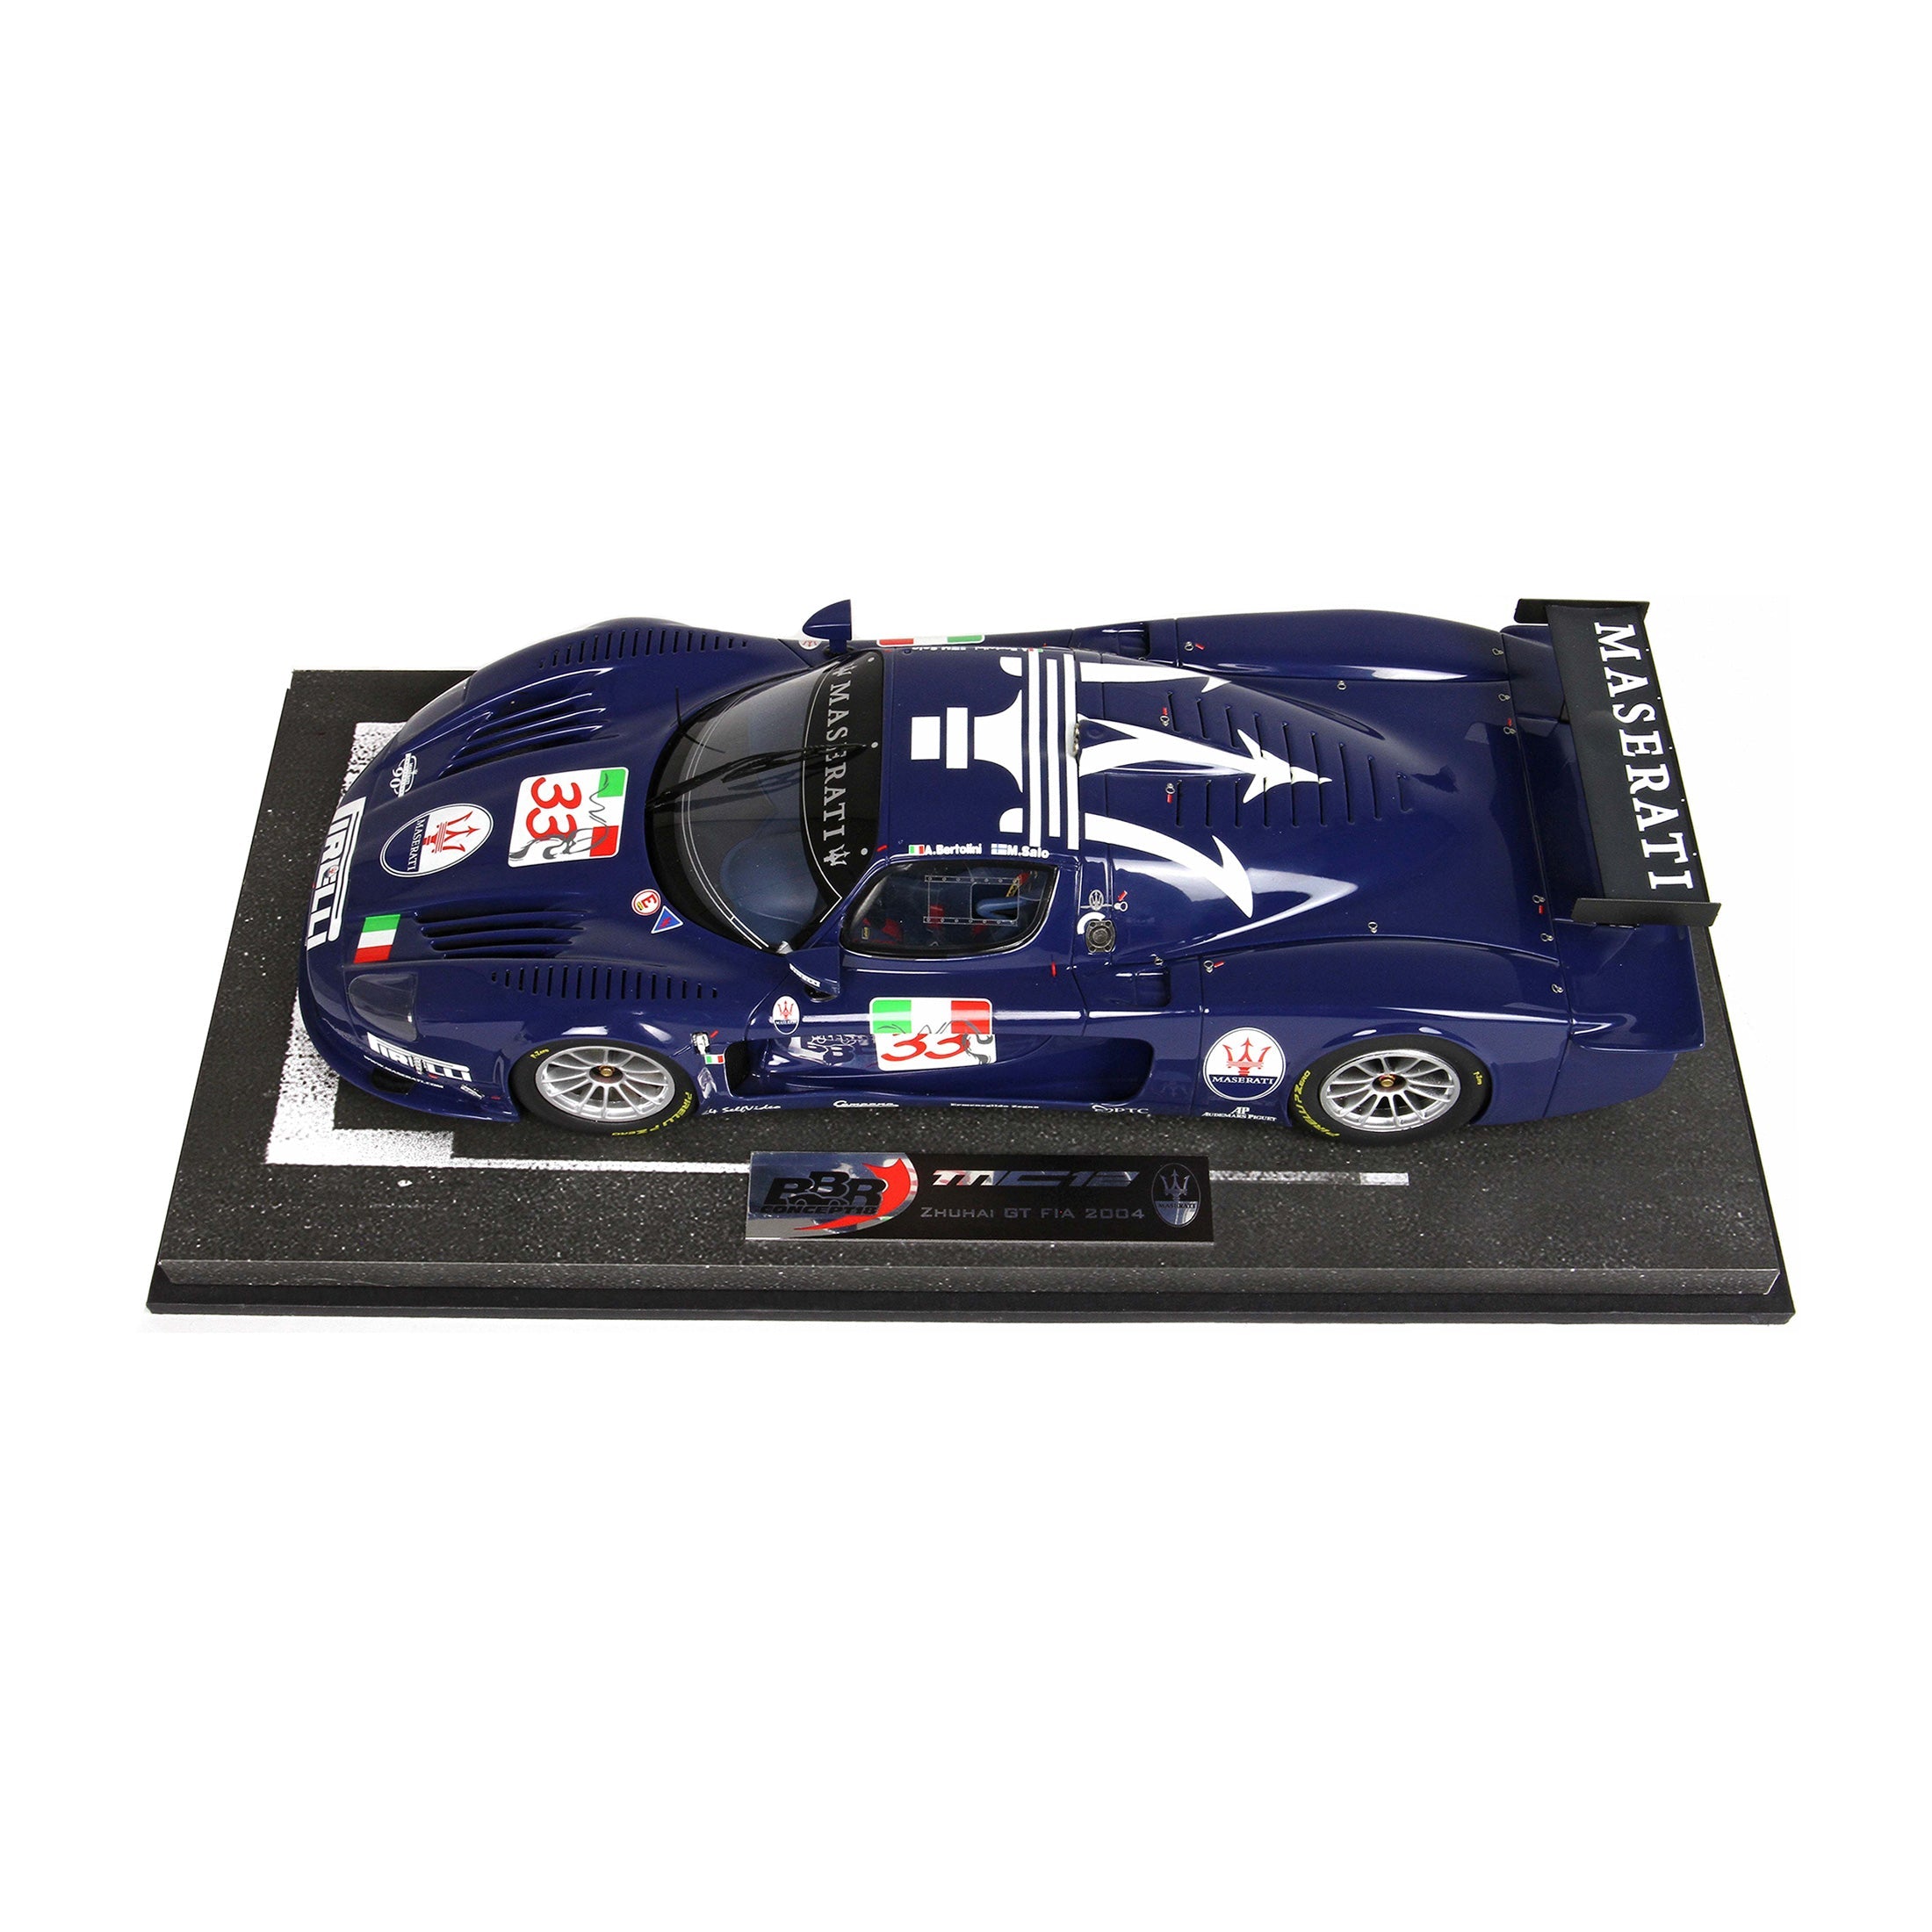 1:18 MC12 n 33 blu – Maseratistore